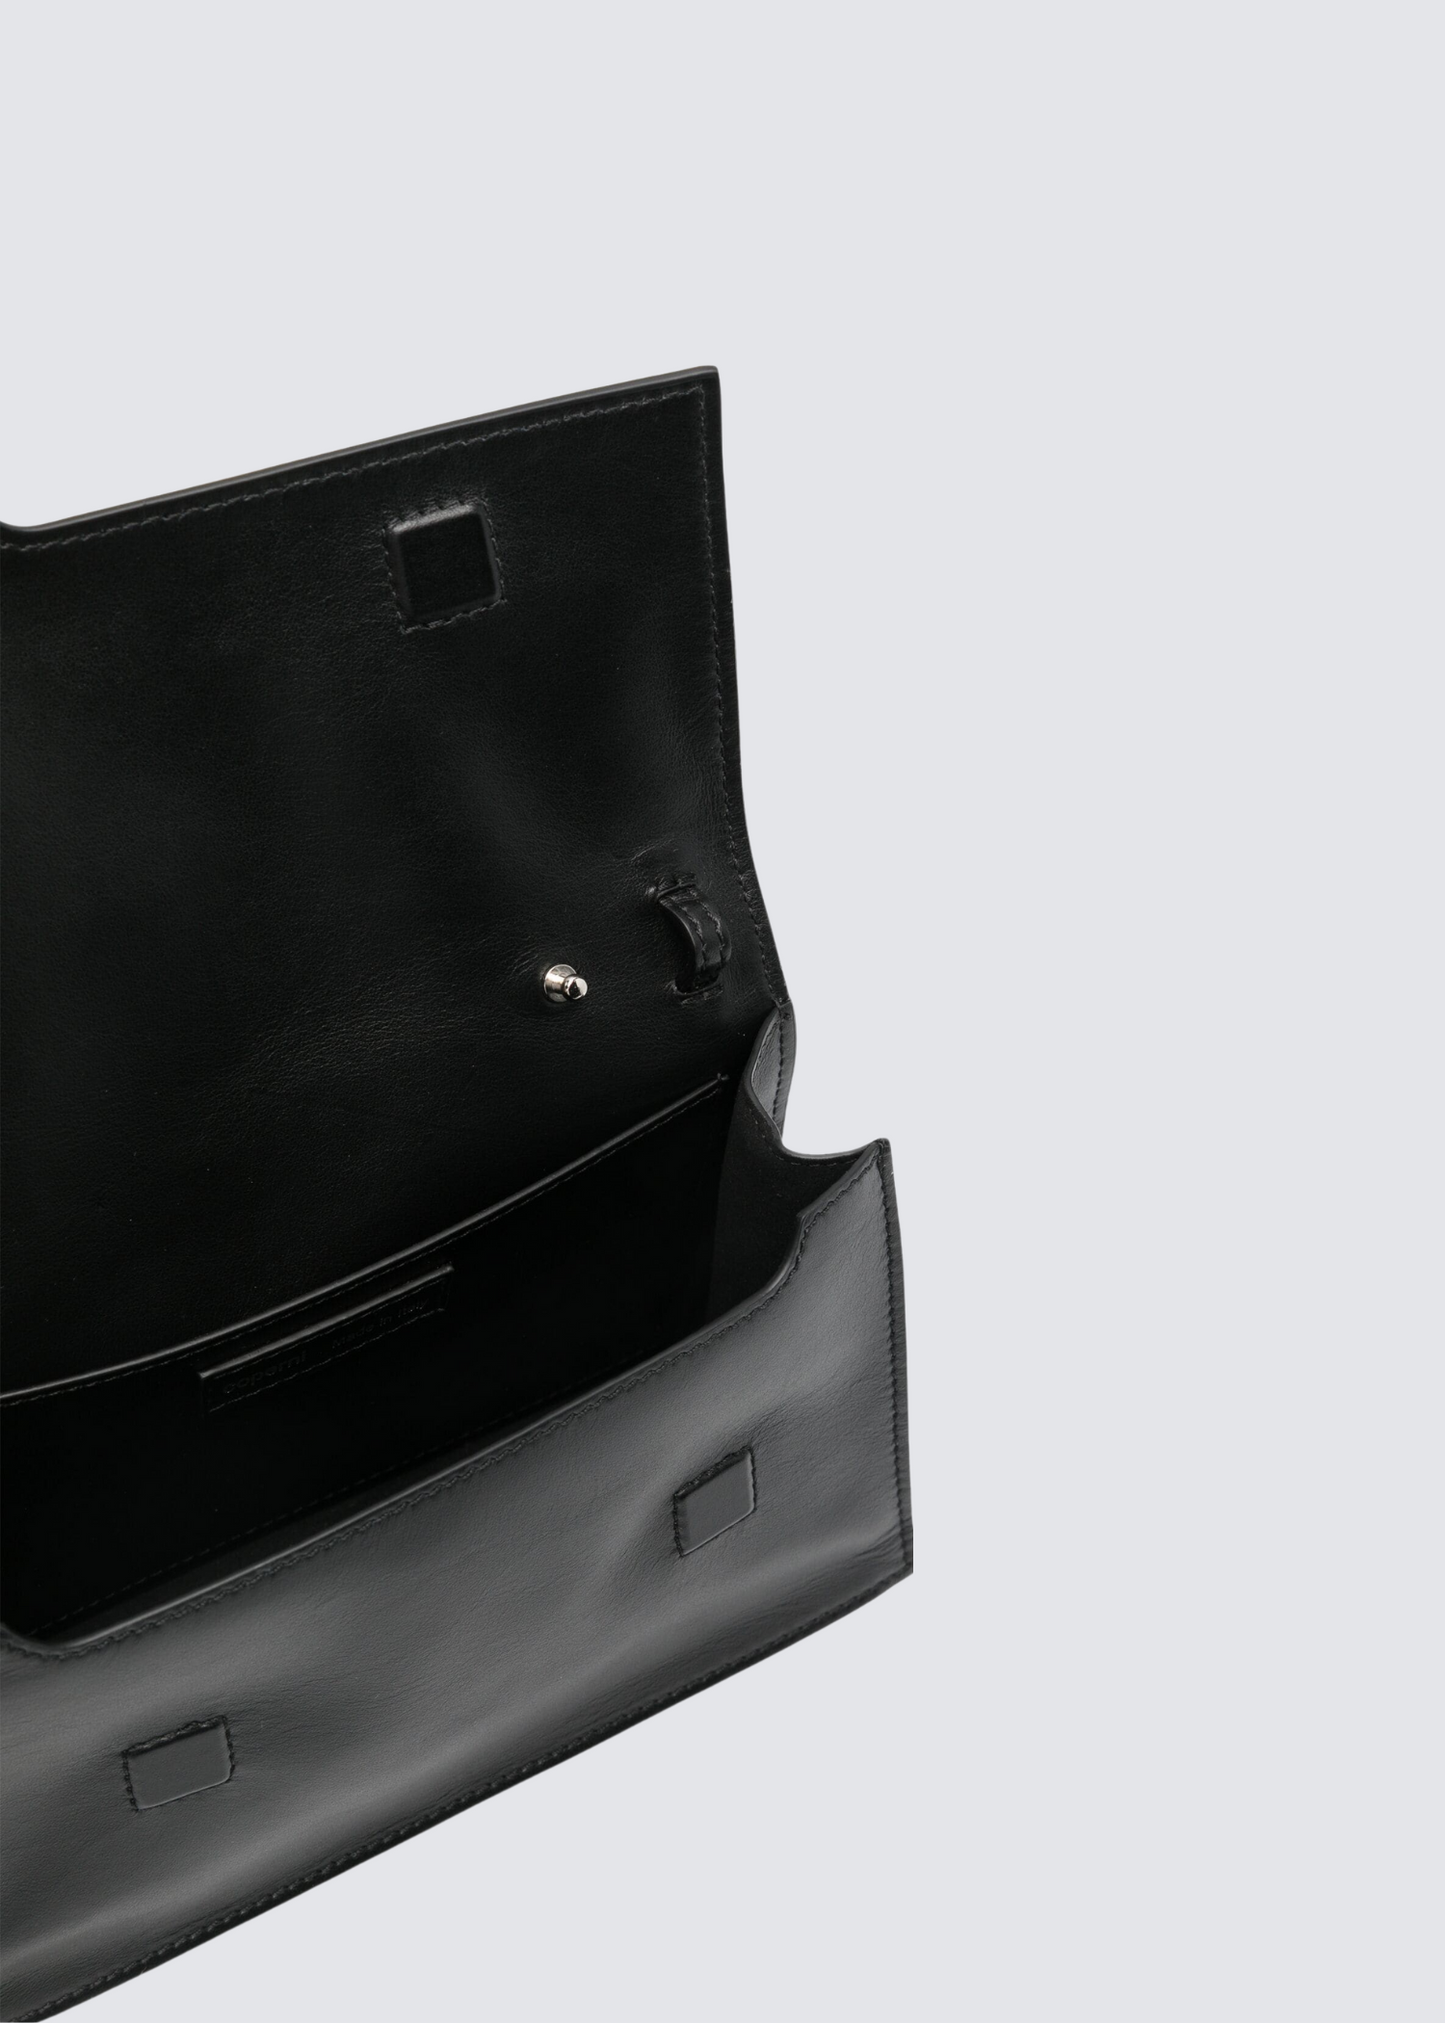 Mini Folder, Black, Bag